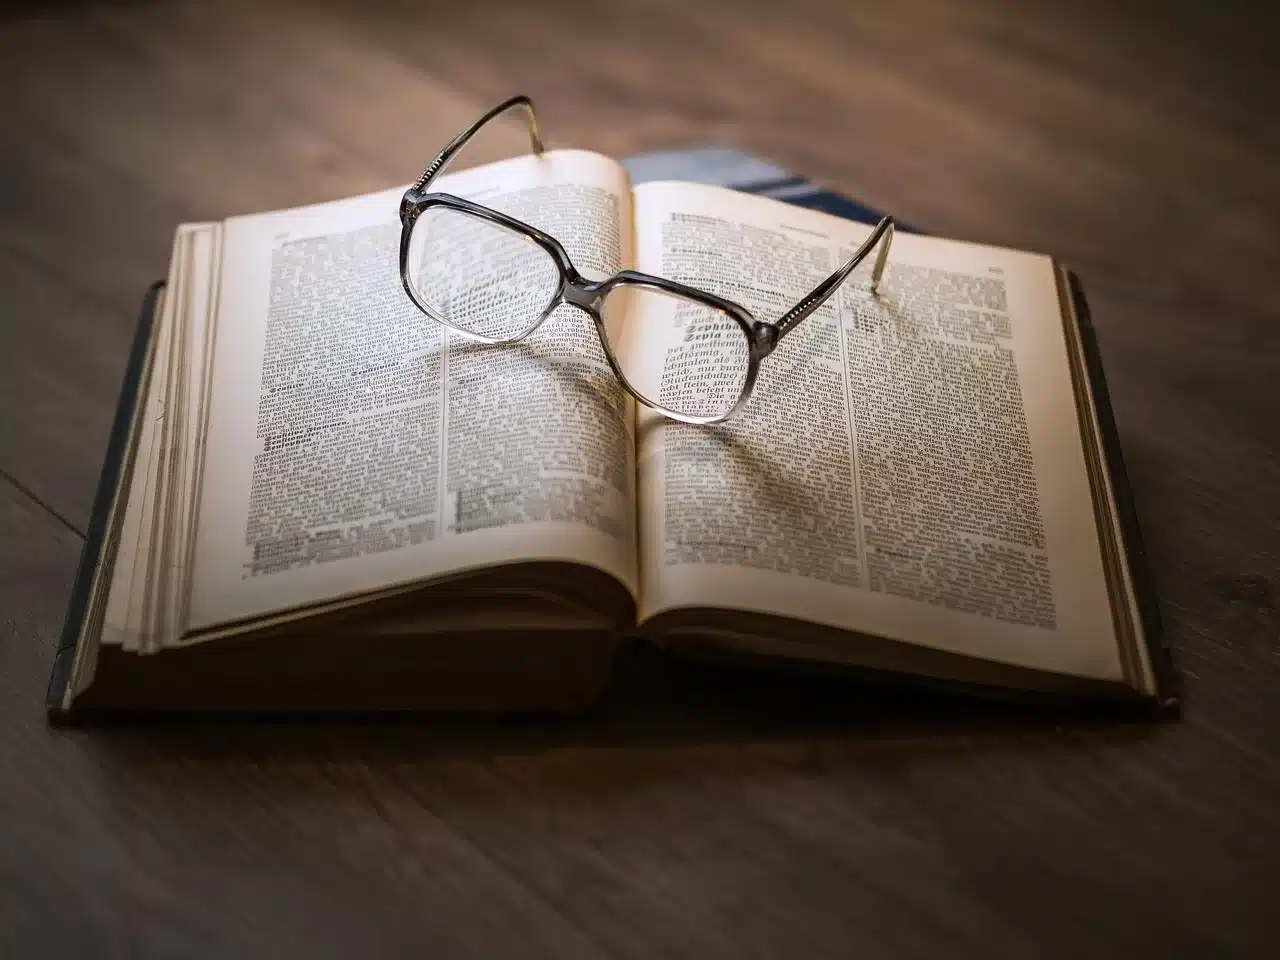 Paire de lunettes sur un livre ouvert illustrant le fait d'actualiser ses connaissances à l'international